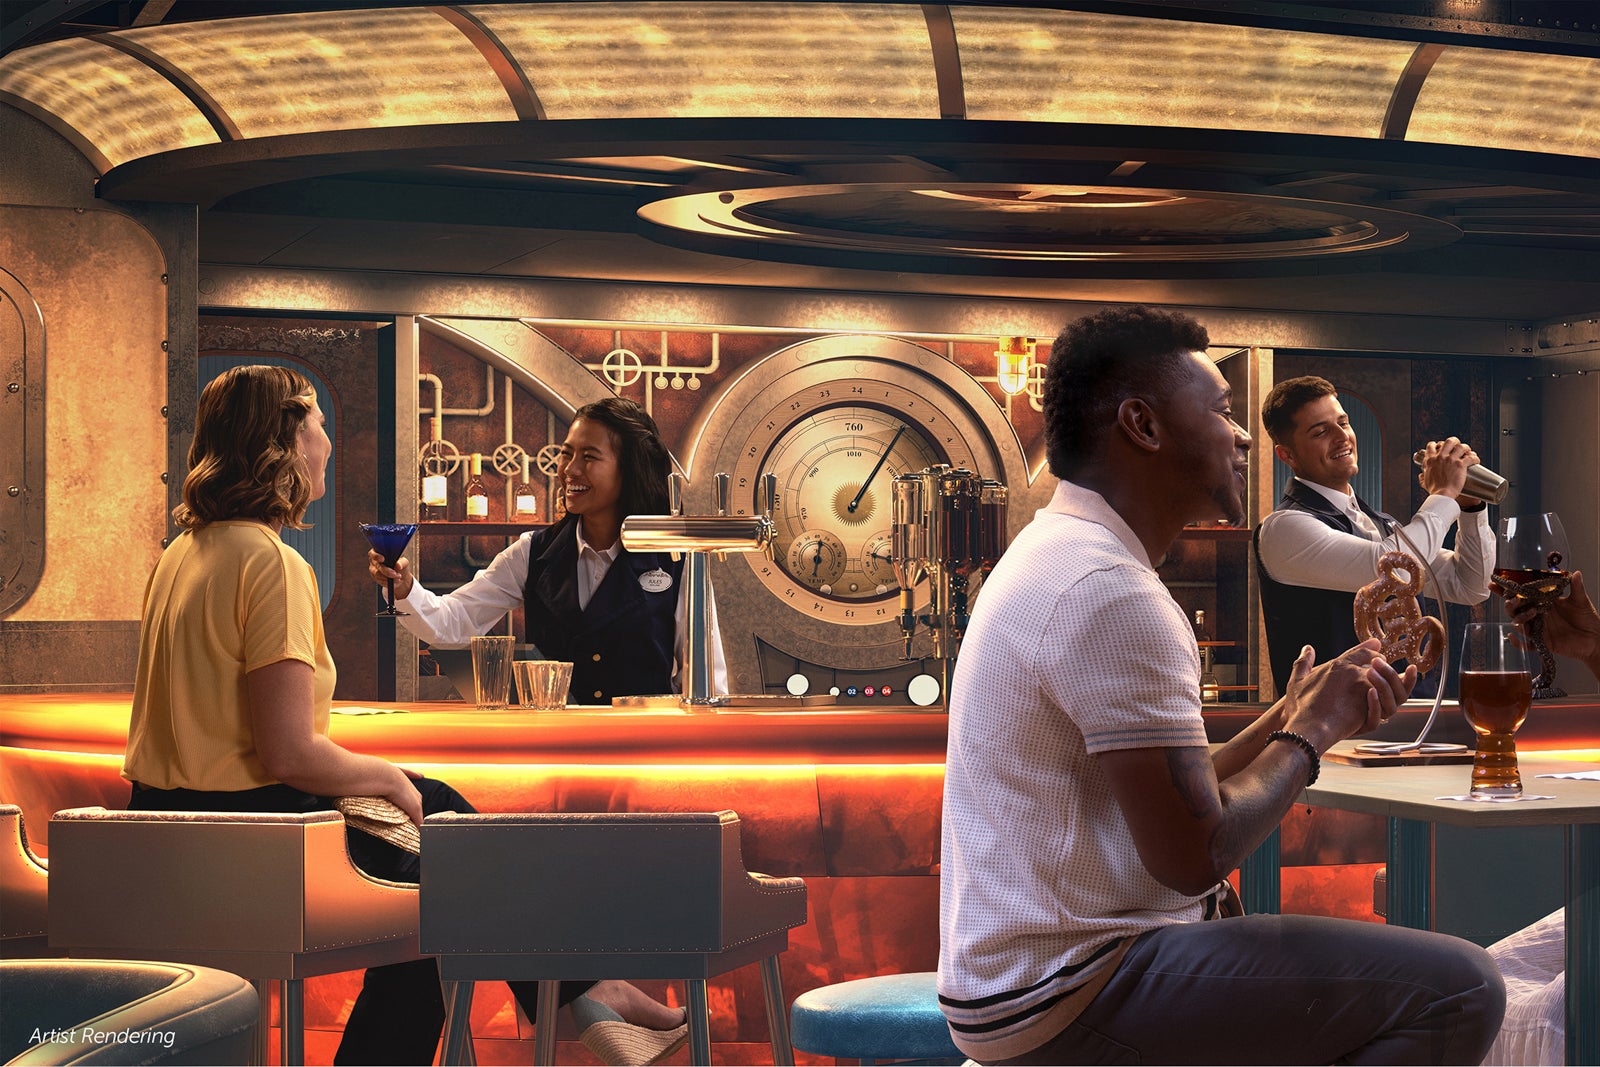 Artist's rendering of Periscope Pub.